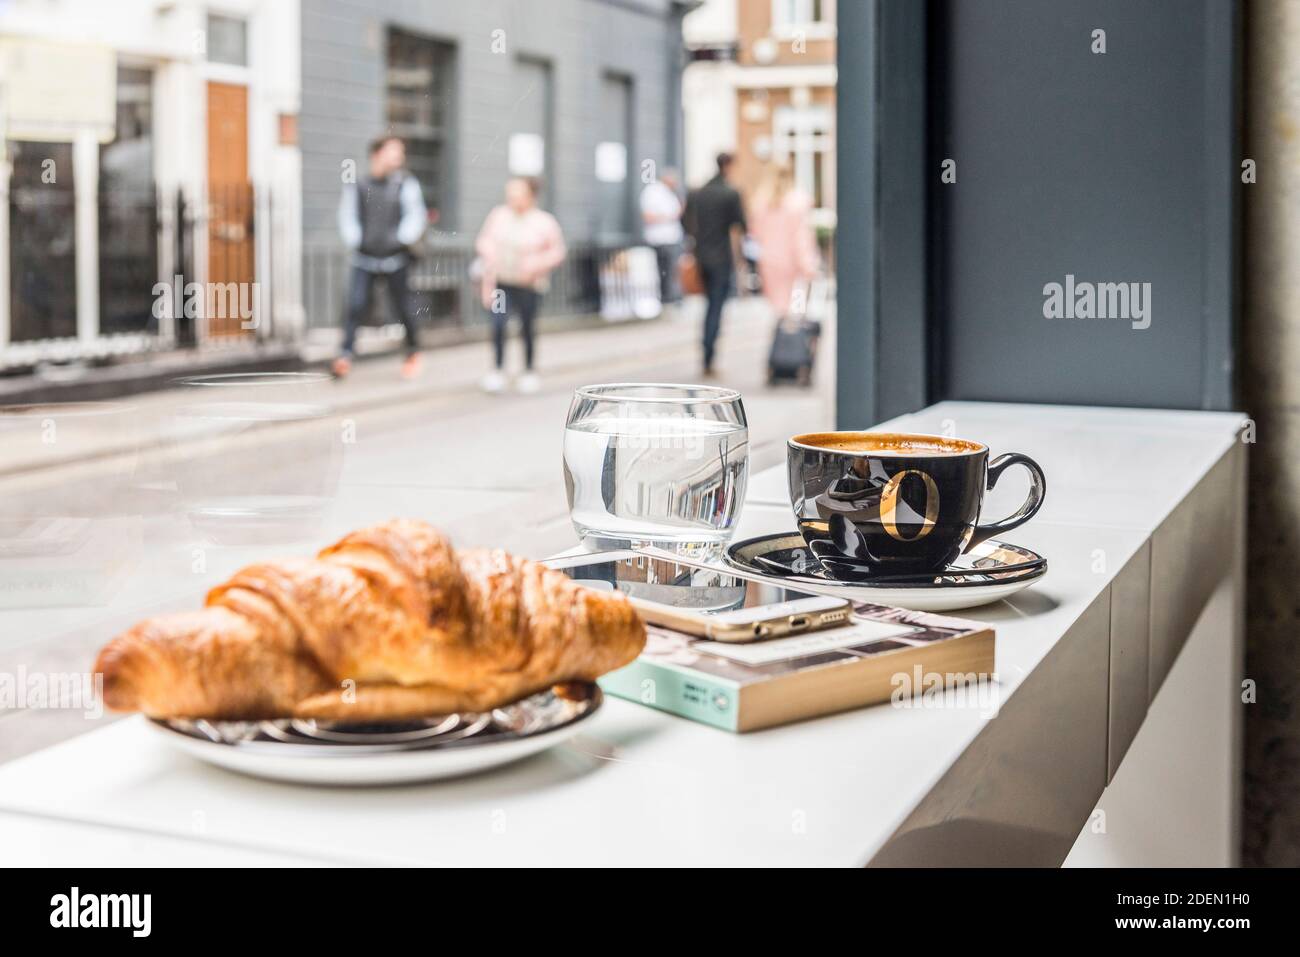 Coin petit déjeuner/détente donnant sur la rue. Salon 64, Londres, Royaume-Uni. Architecte: Jak Studio, 2020. Banque D'Images